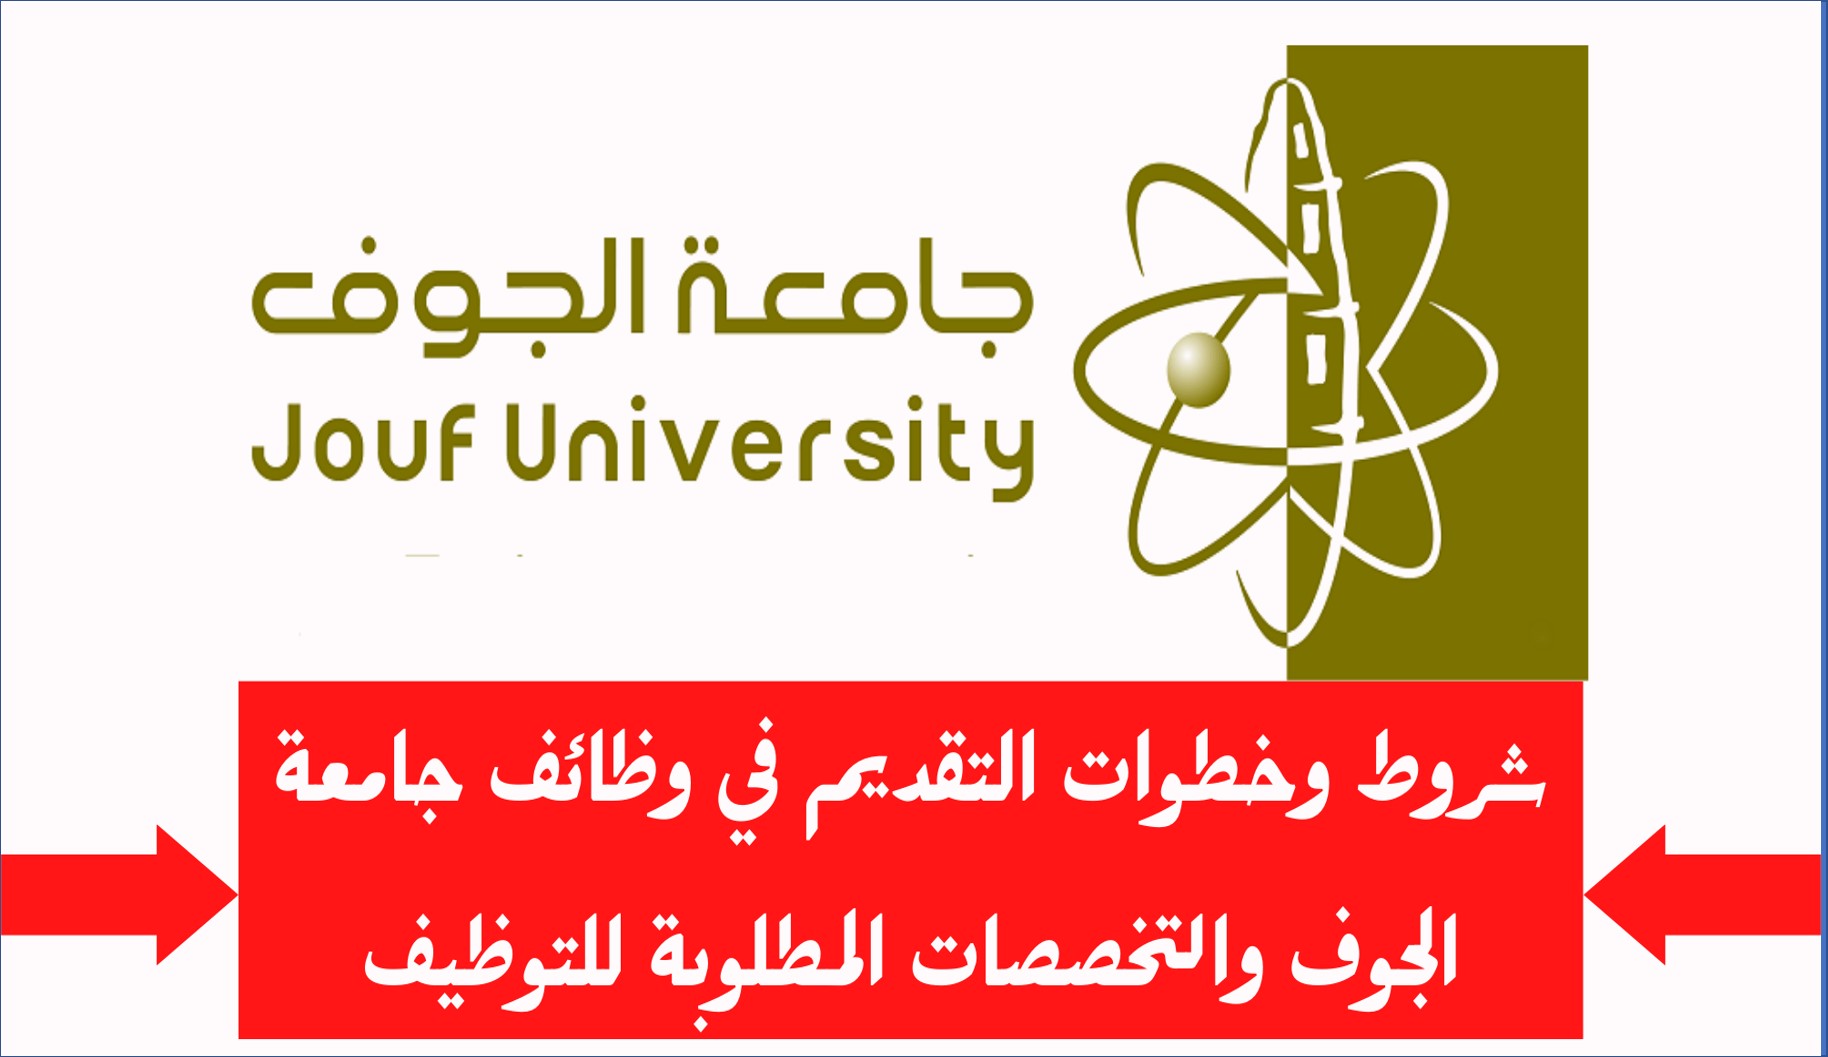 جامعة الجوف تعلن عن فرص وظيفية بنظام العقود الرسمية